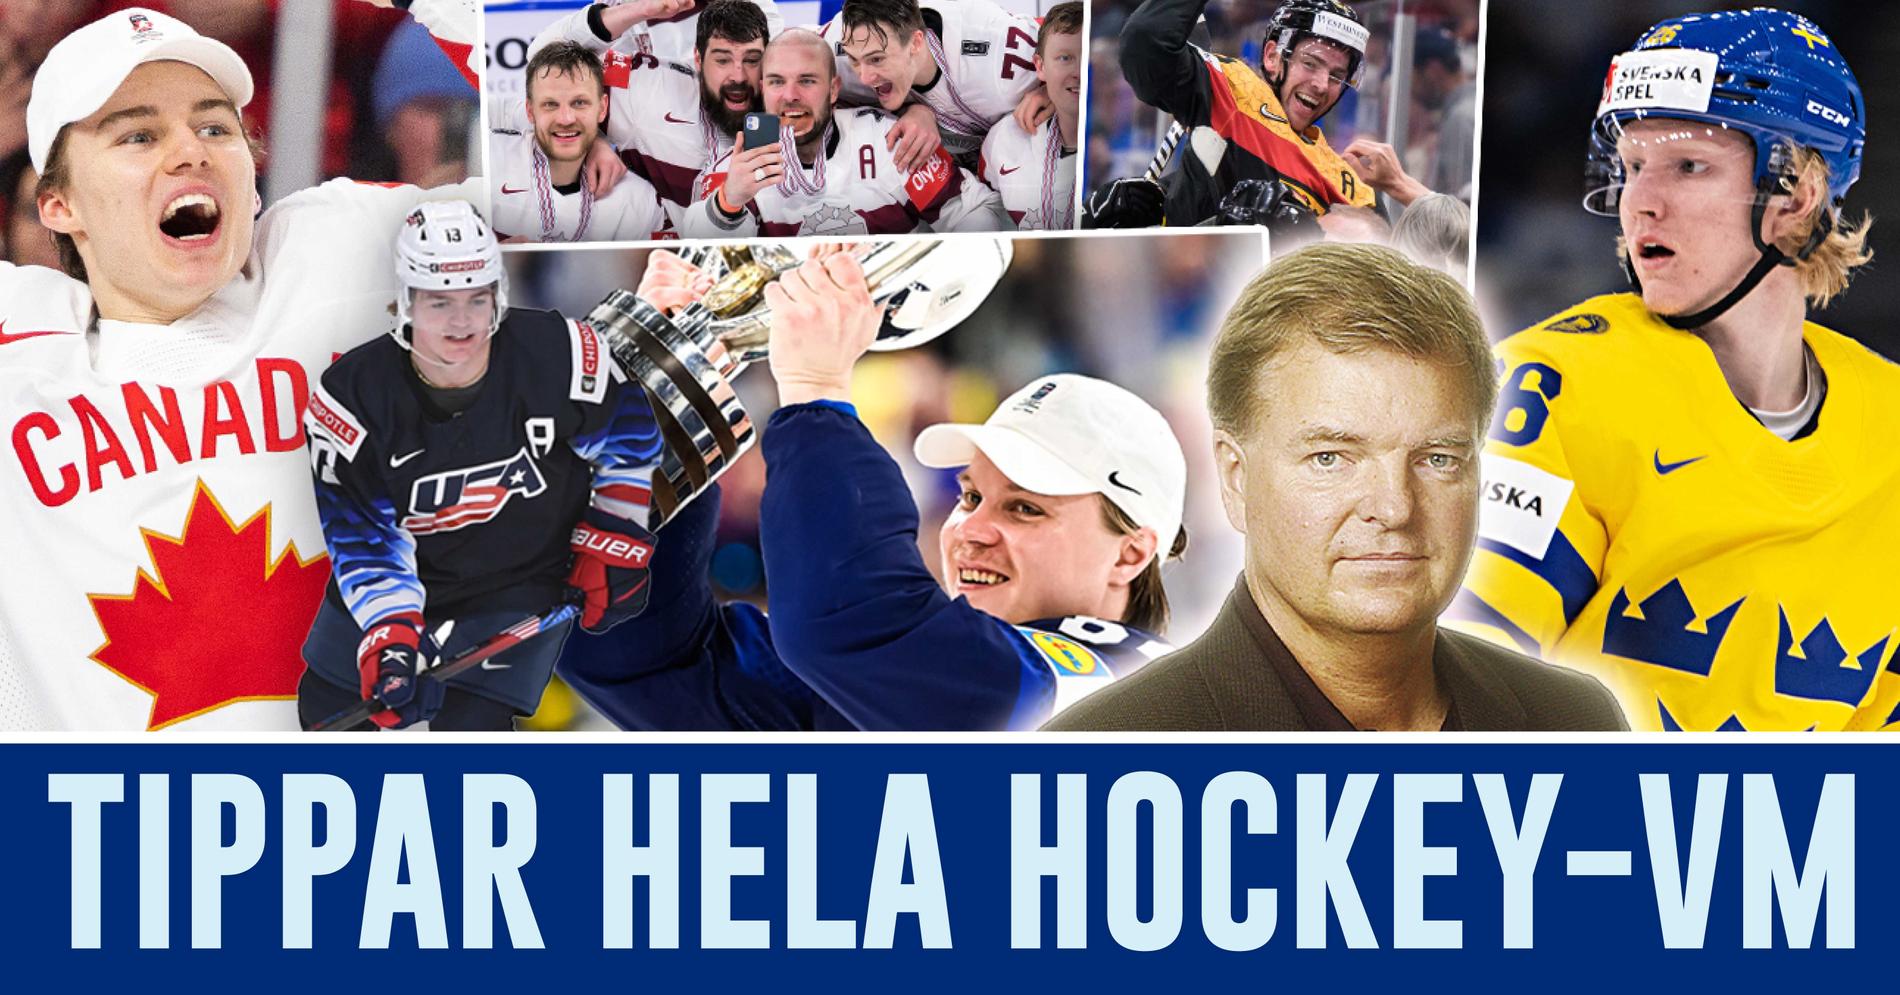 Tippar hela hockey-VM: ”Hoppas att jag har fel”